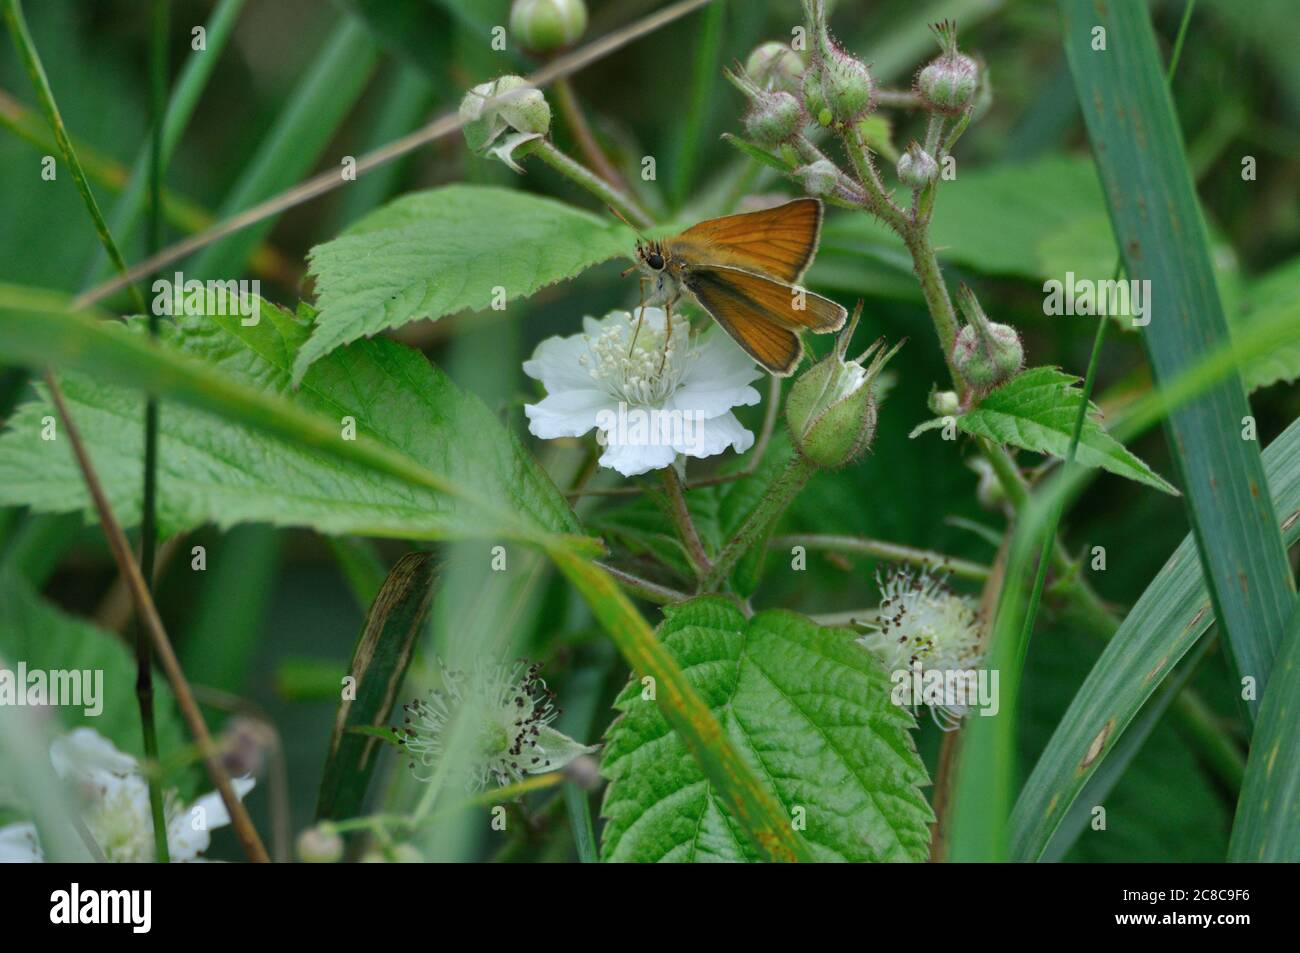 Braunkolbiger Braun-Dickkopffalter (Thymelicus sylvestris) auf der Halbinsel Gnitz am Achterwasser der Insel Usedom auf einer weißen Blüte. Stock Photo